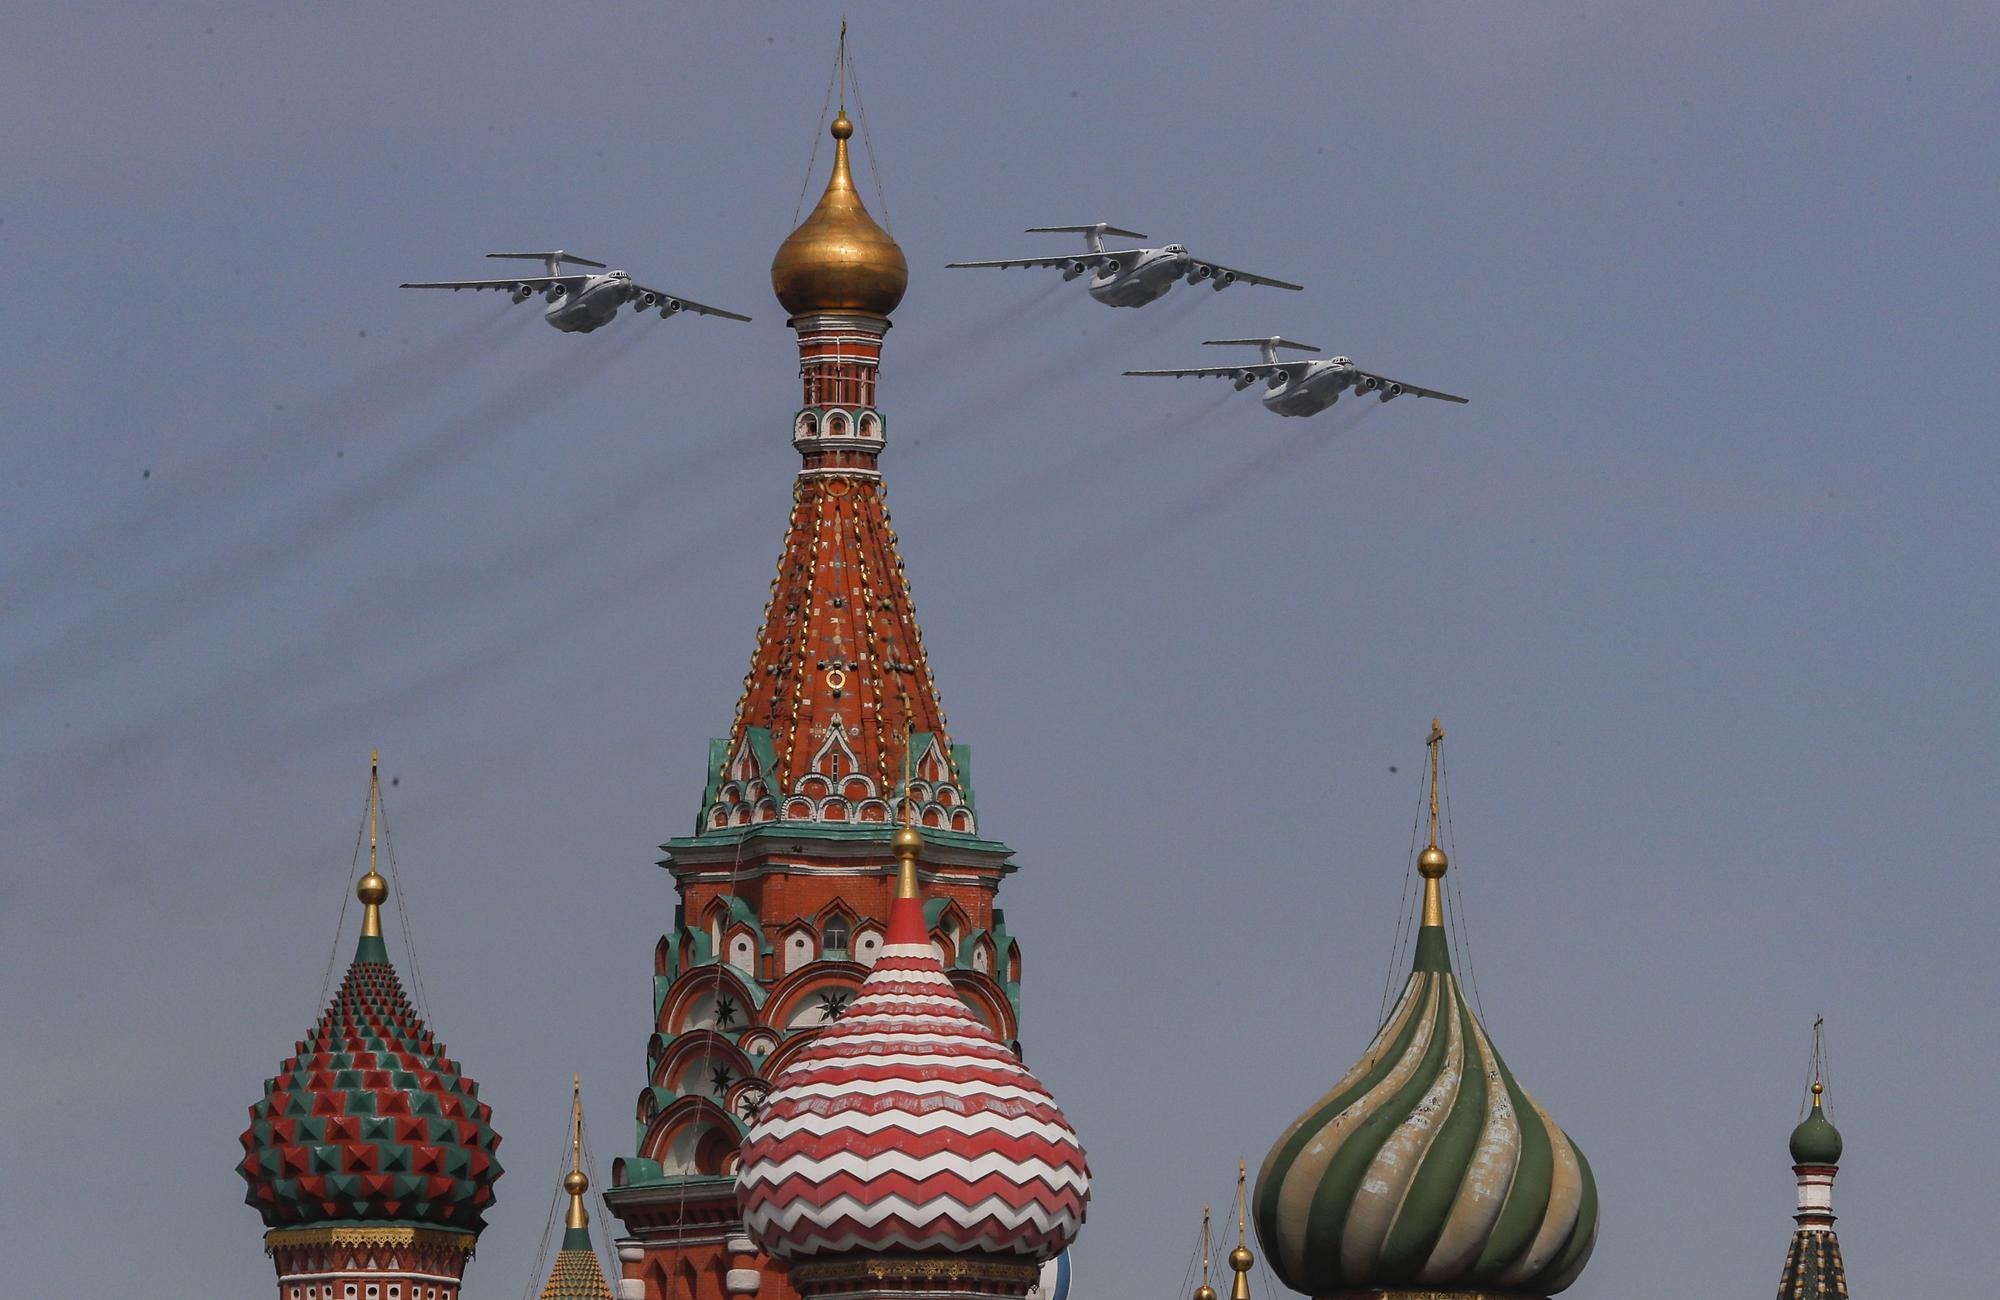 Putin preside en Moscú el desfile militar por el aniversario de la victoria frente a los nazis